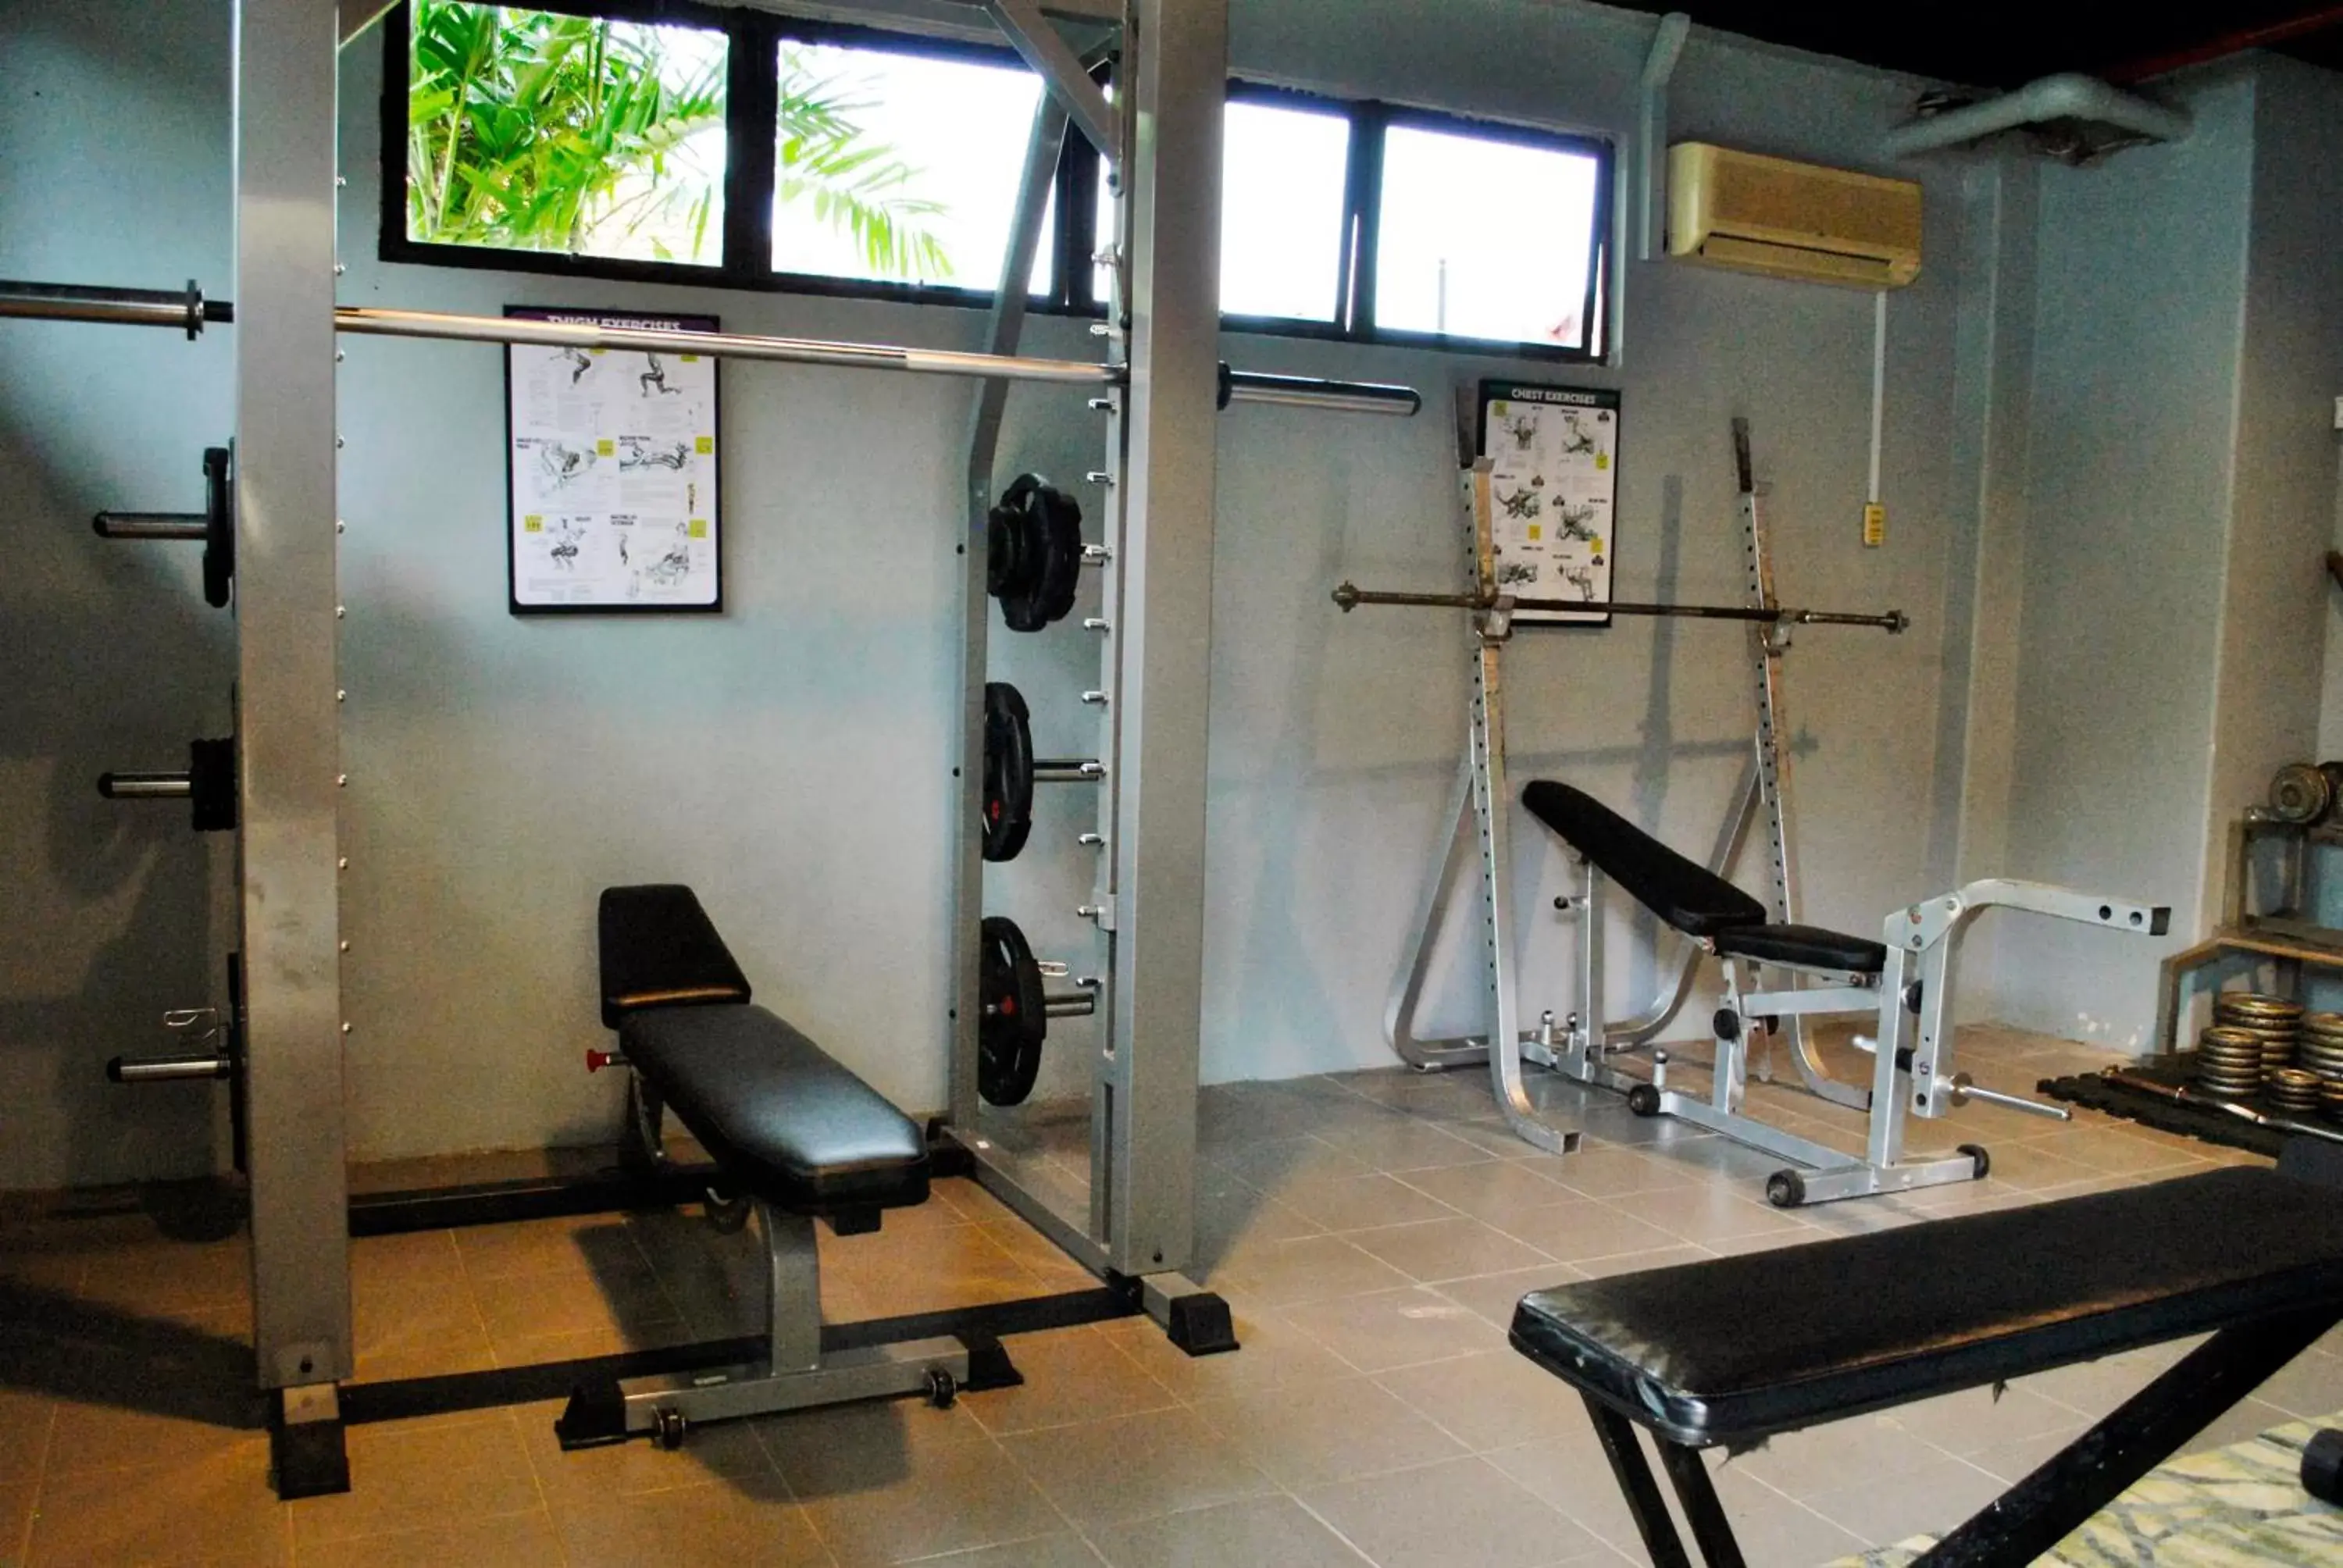 Fitness centre/facilities, Fitness Center/Facilities in Kudat Golf & Marina Resort